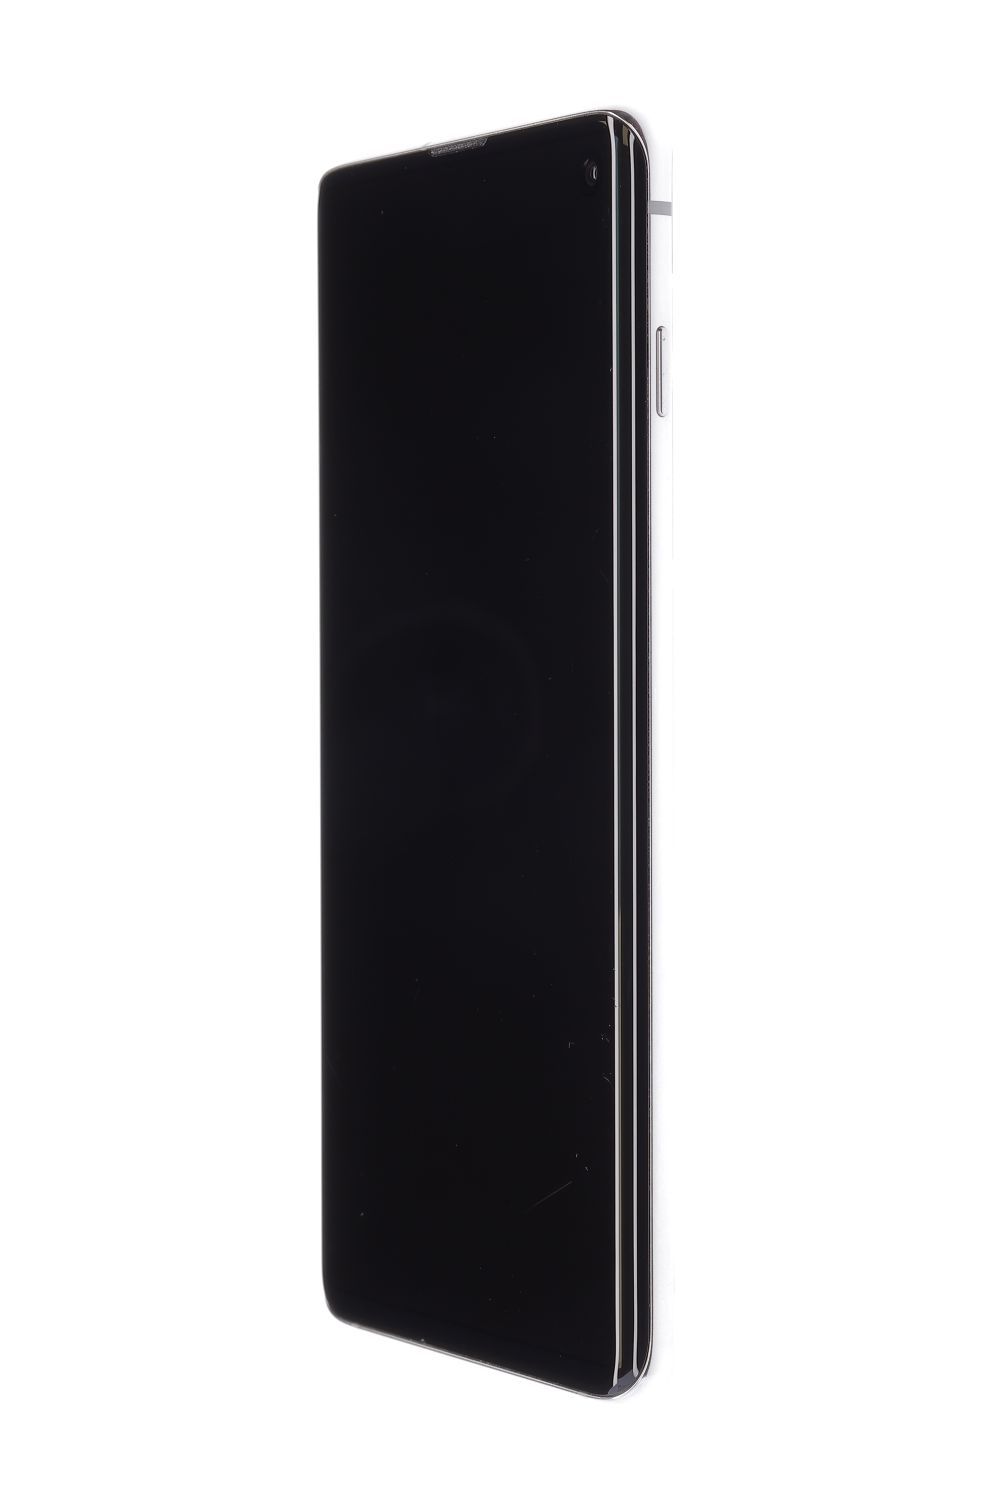 Telefon mobil Samsung Galaxy S10 Dual Sim, Prism White, 128 GB, Ca Nou